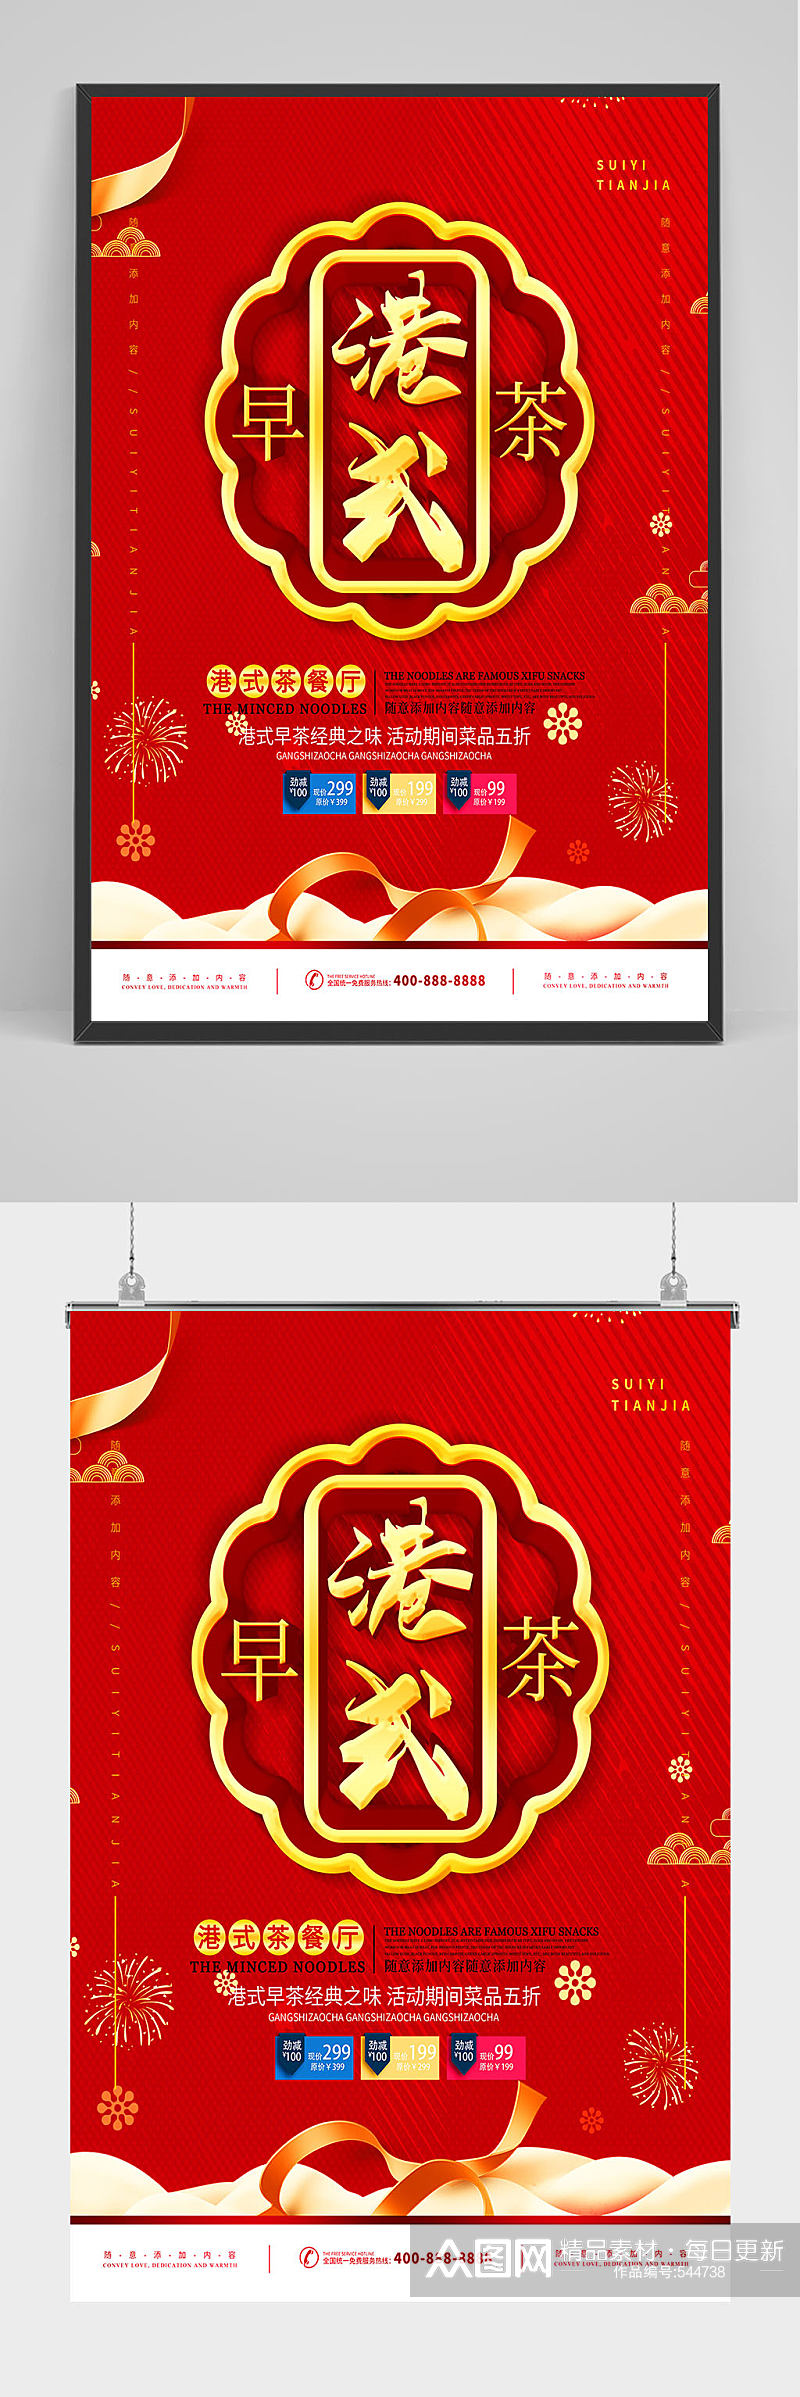 红色喜庆港式早茶包子海报设计素材